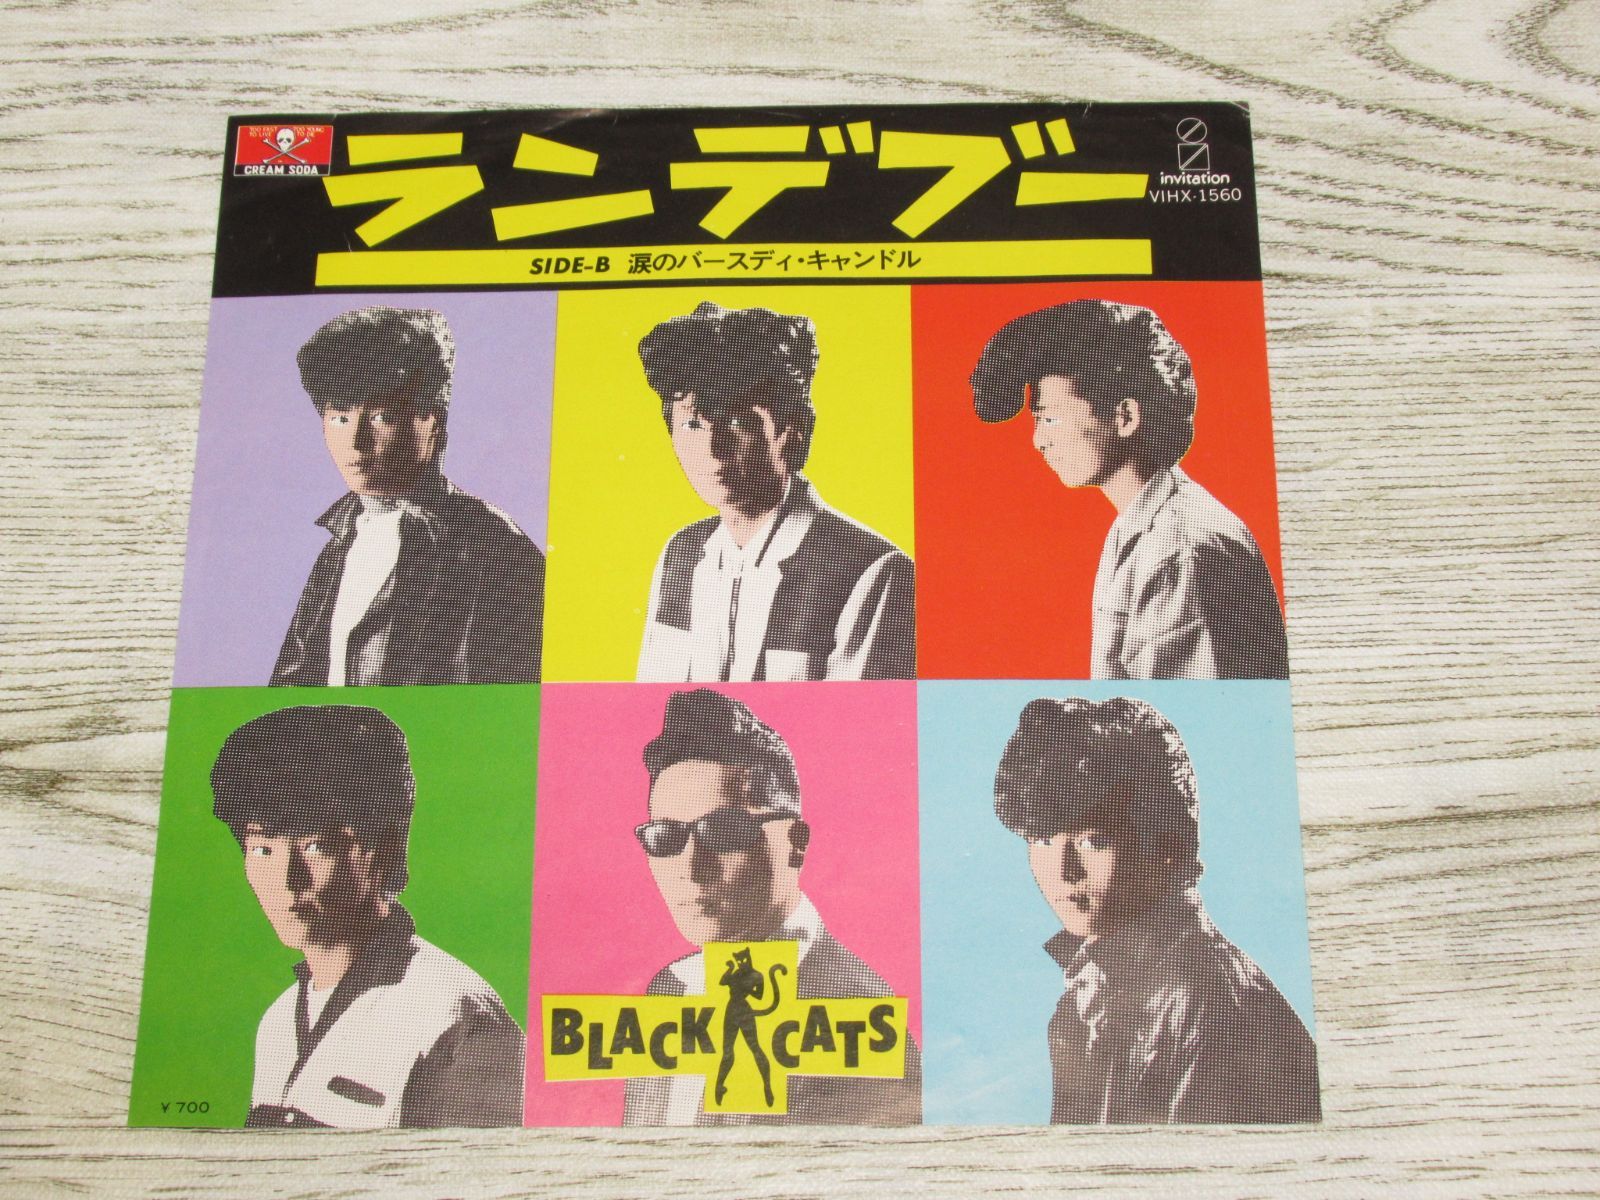 シングルレコード ブラック・キャッツ ランデブー VIHX-1560 BLACK